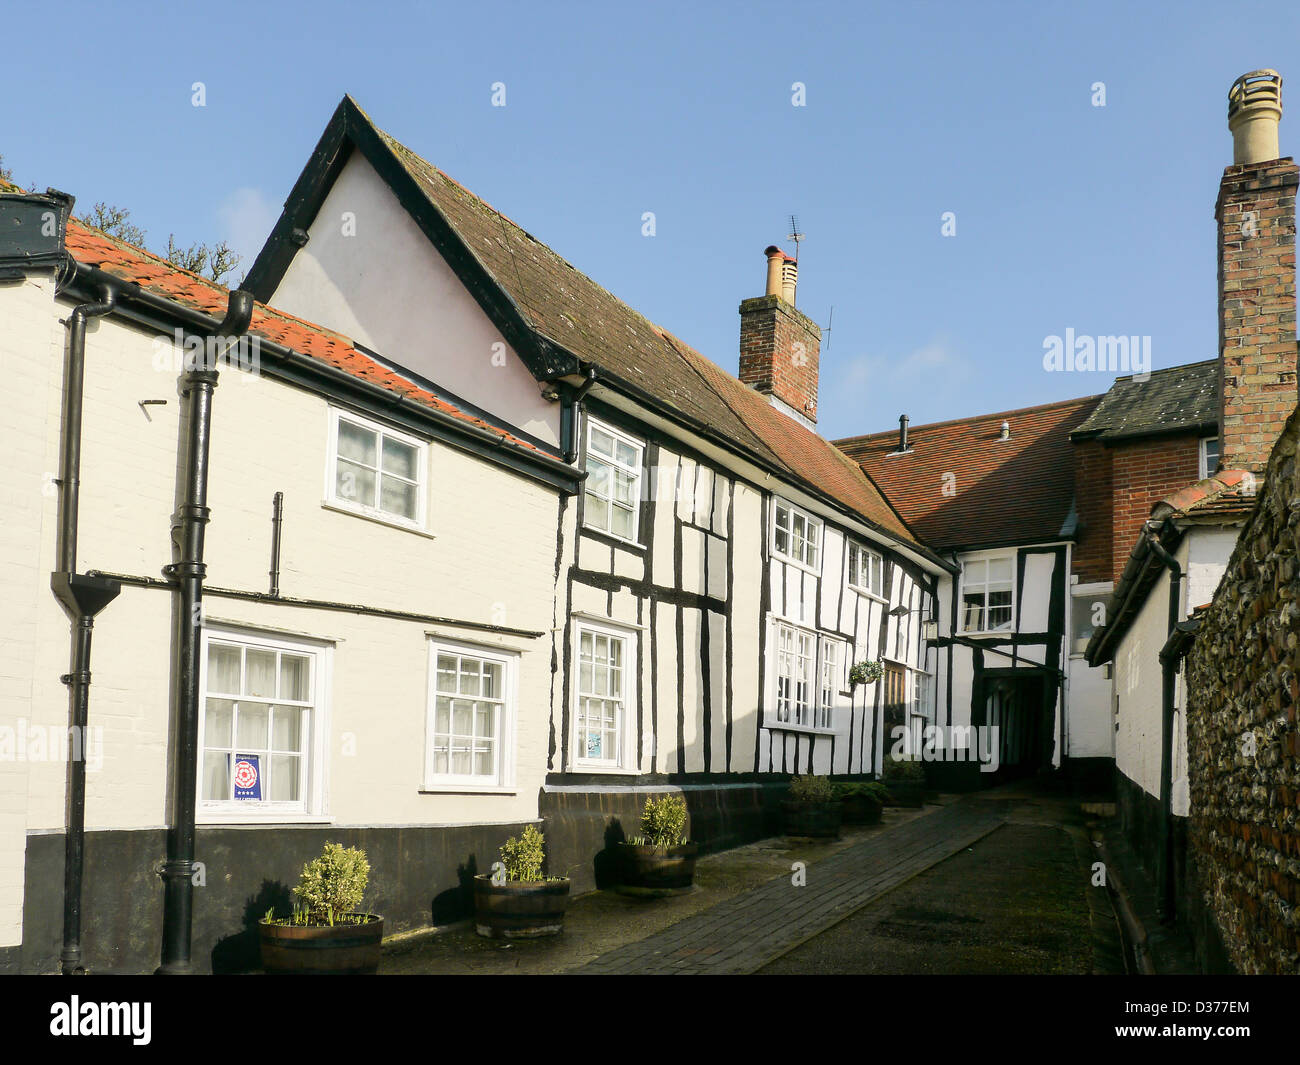 De style Tudor, mews situé dans le bourg de Framlingham, Suffolk, UK Banque D'Images